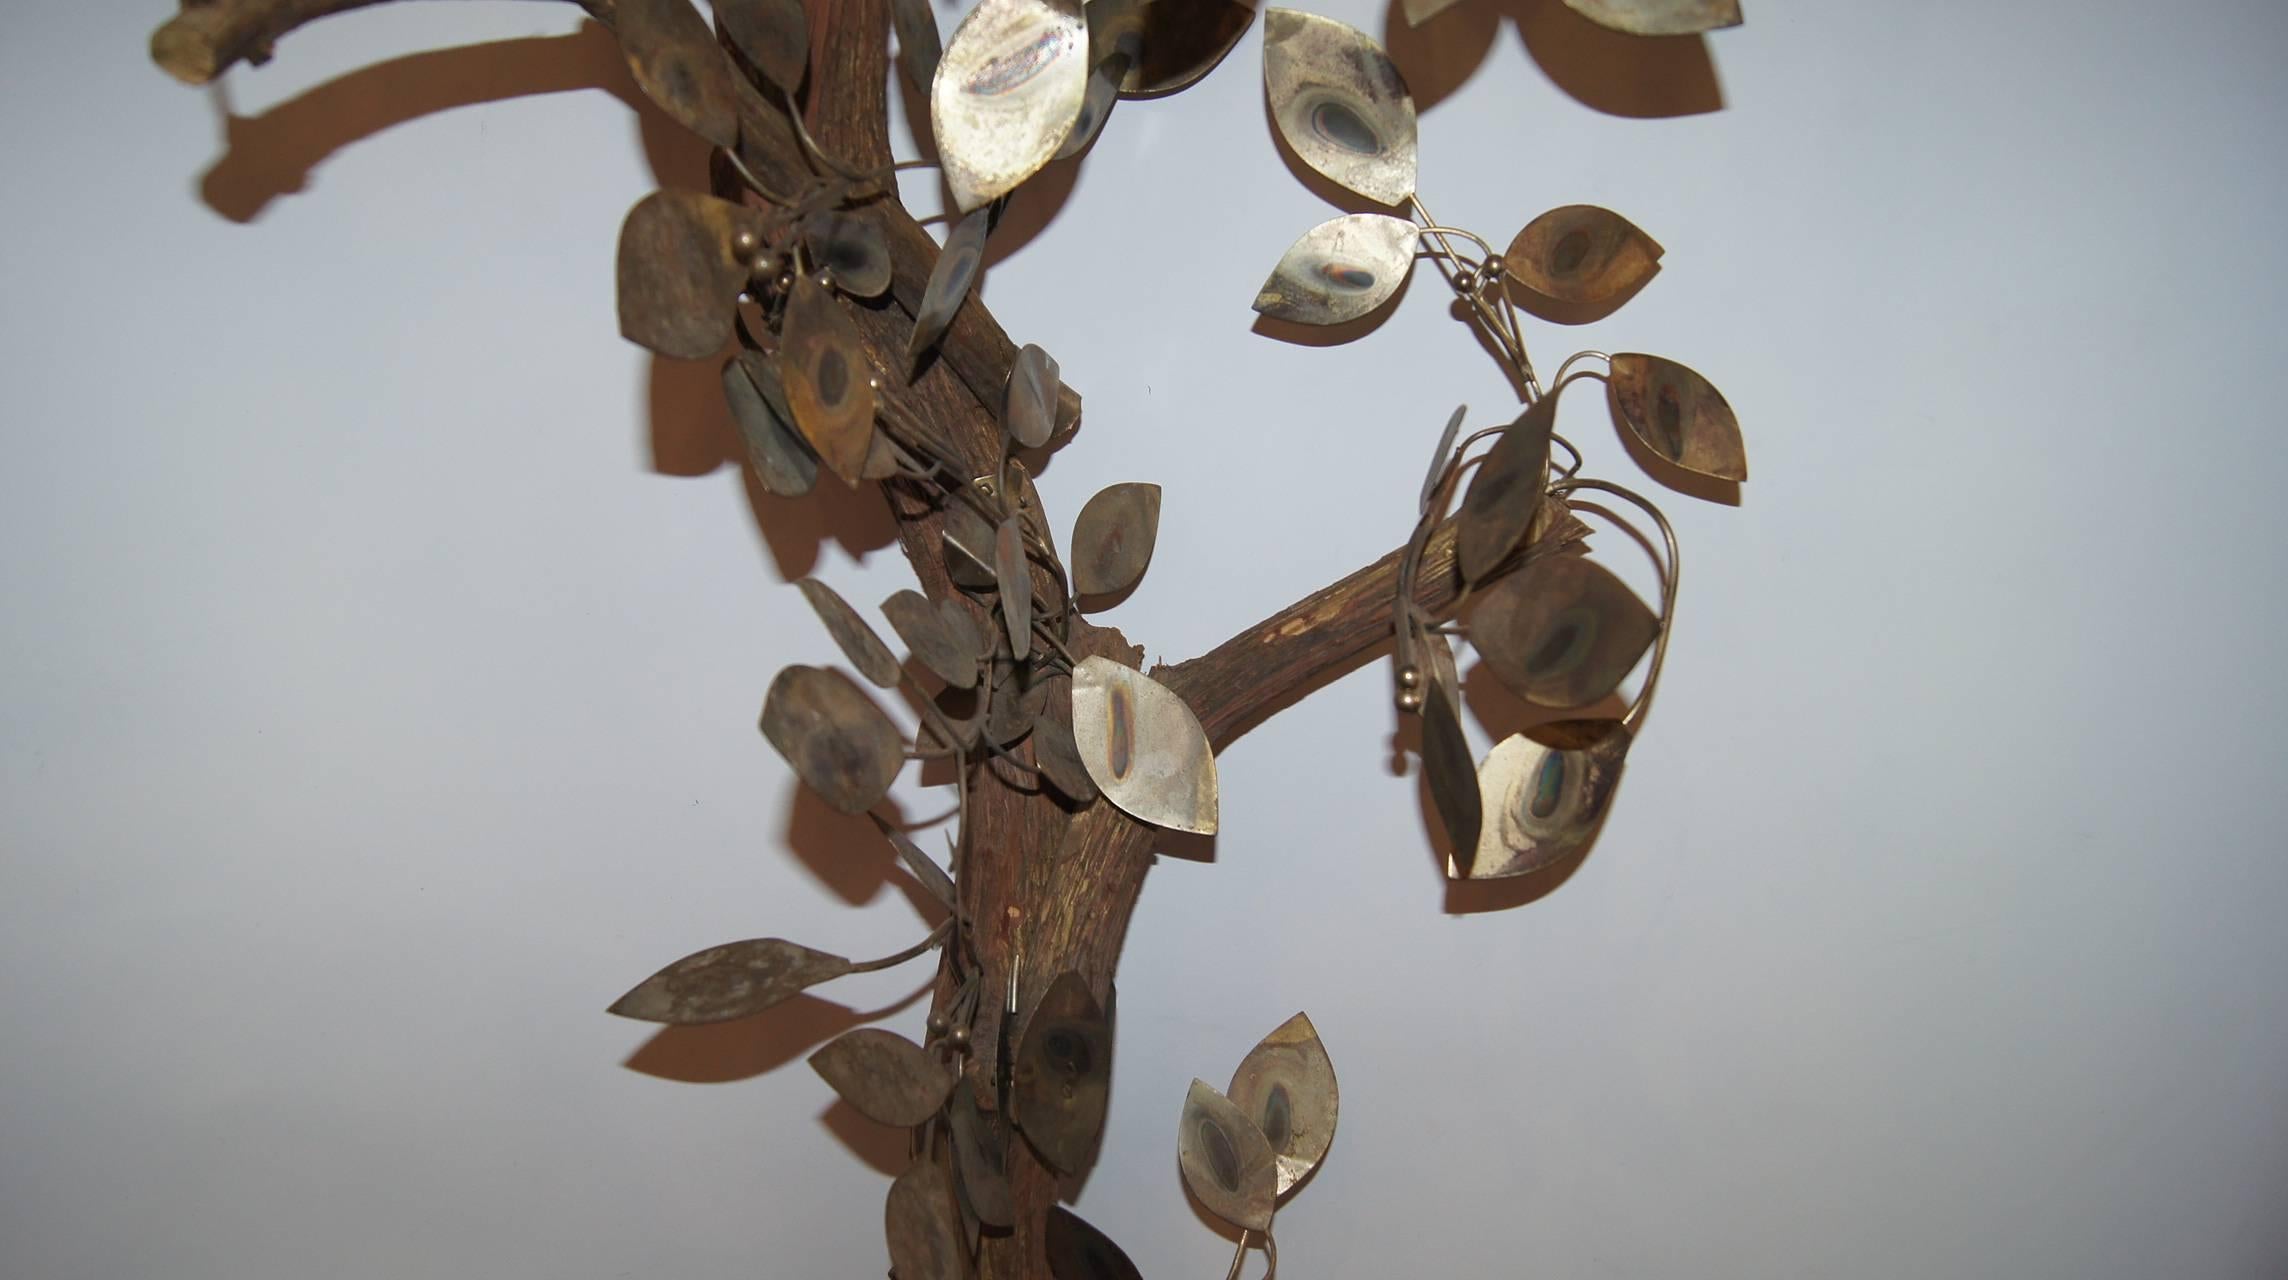 Un arbre italien en métal martelé et patiné datant des années 1960.

Mesures :
Hauteur : 74